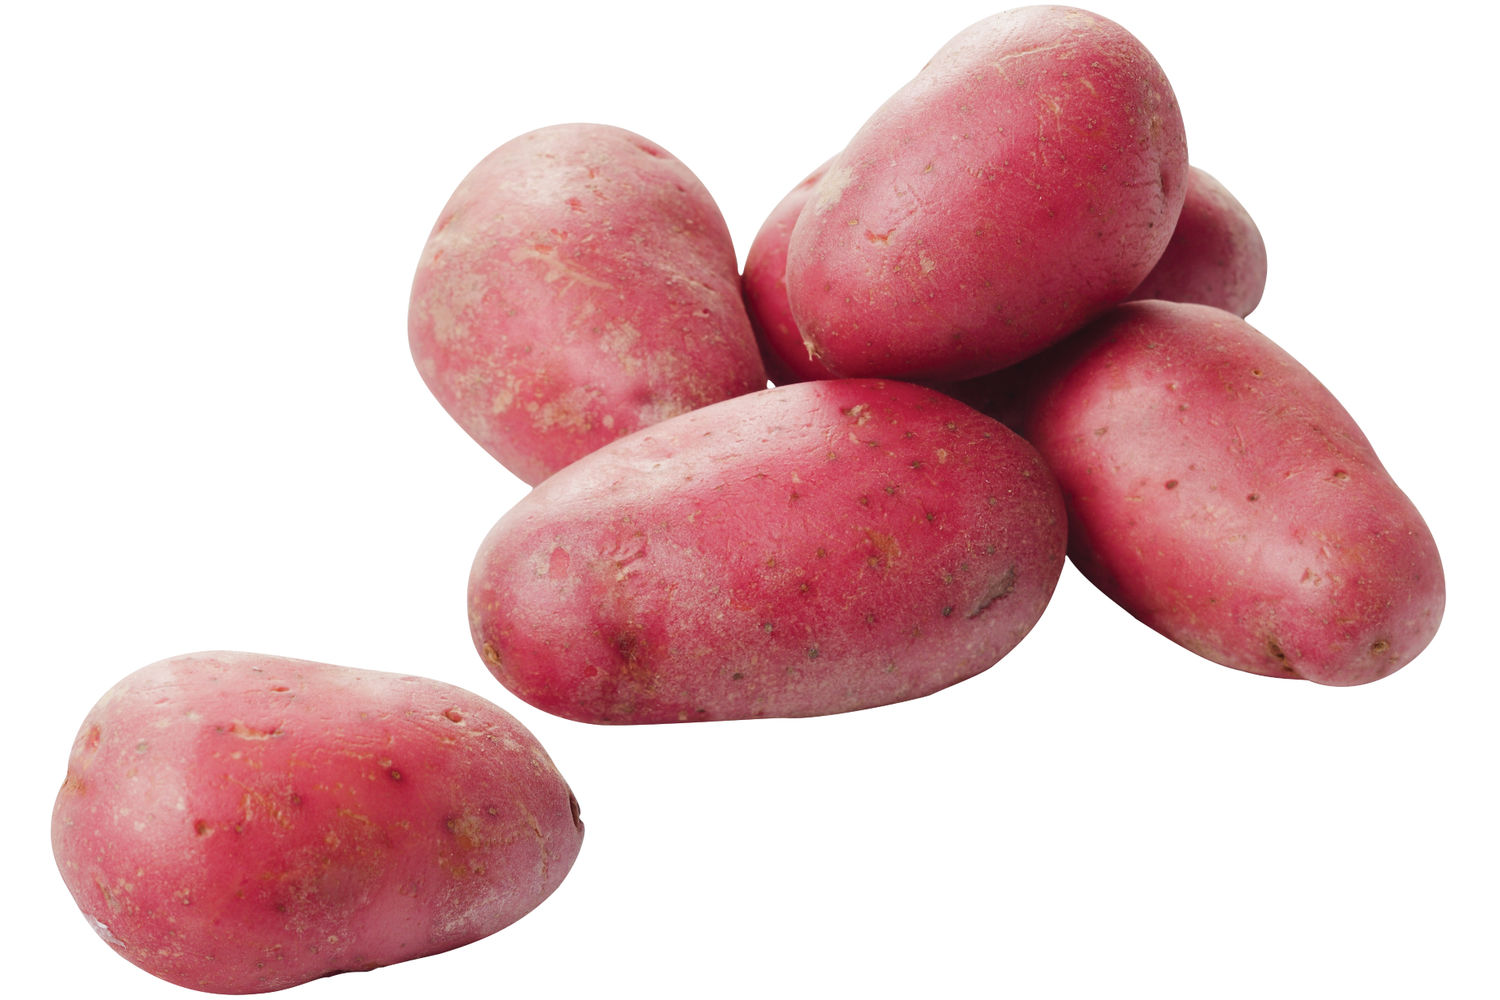 Roseval aardappelen verpakt 2,5kg stuk 1